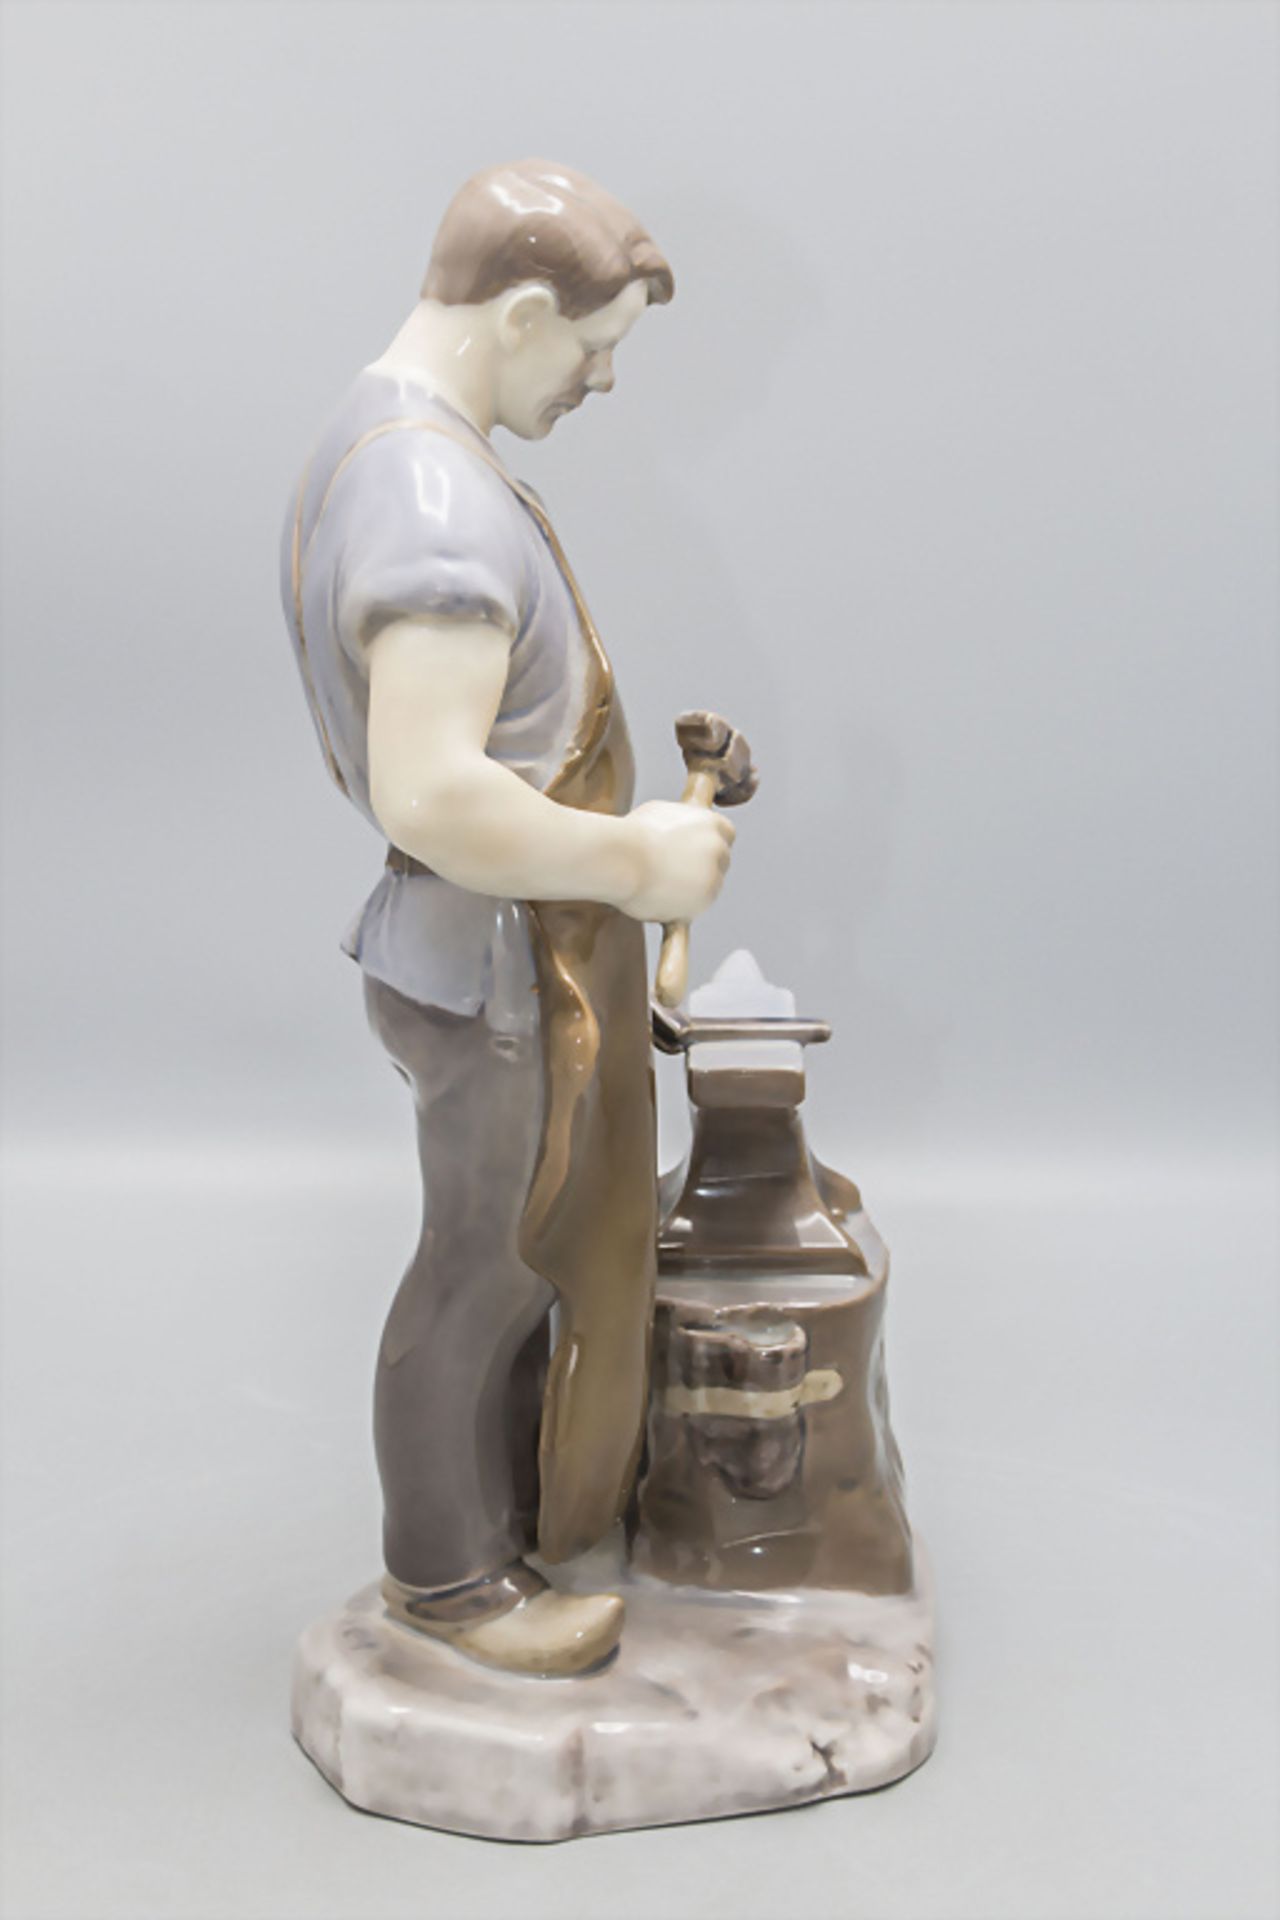 Porzellanfigur 'Schmied' / A porcelain figure of a blacksmith, Bing & Gröndahl, Copenhagen - Image 2 of 8